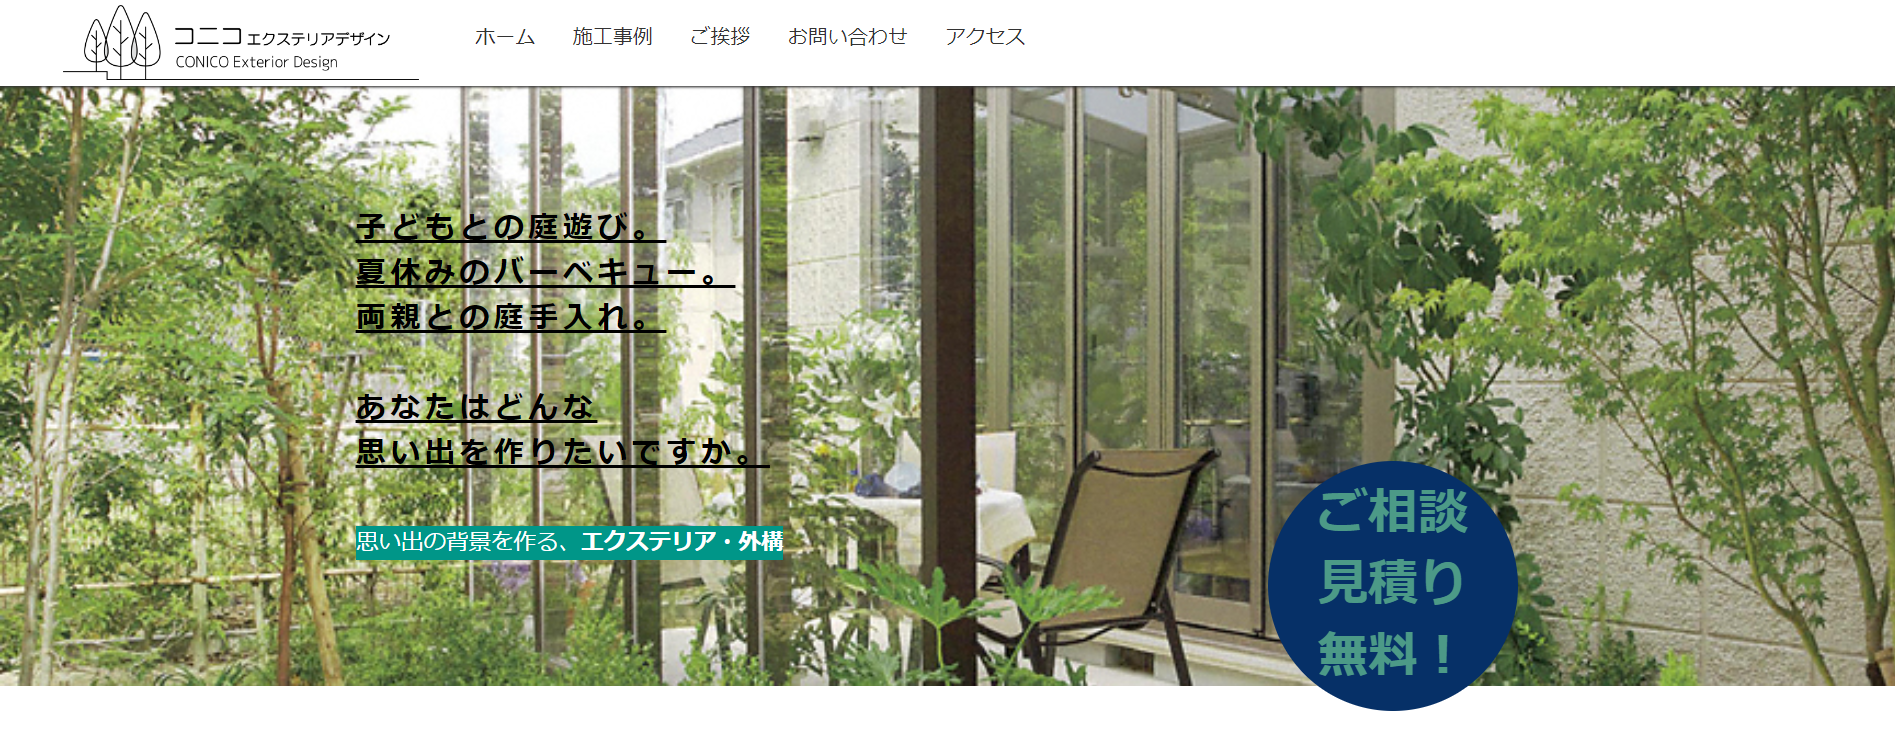 熊本県で評判のおすすめ外構業者ランキング 第8位 コニコ エクステリアデザイン